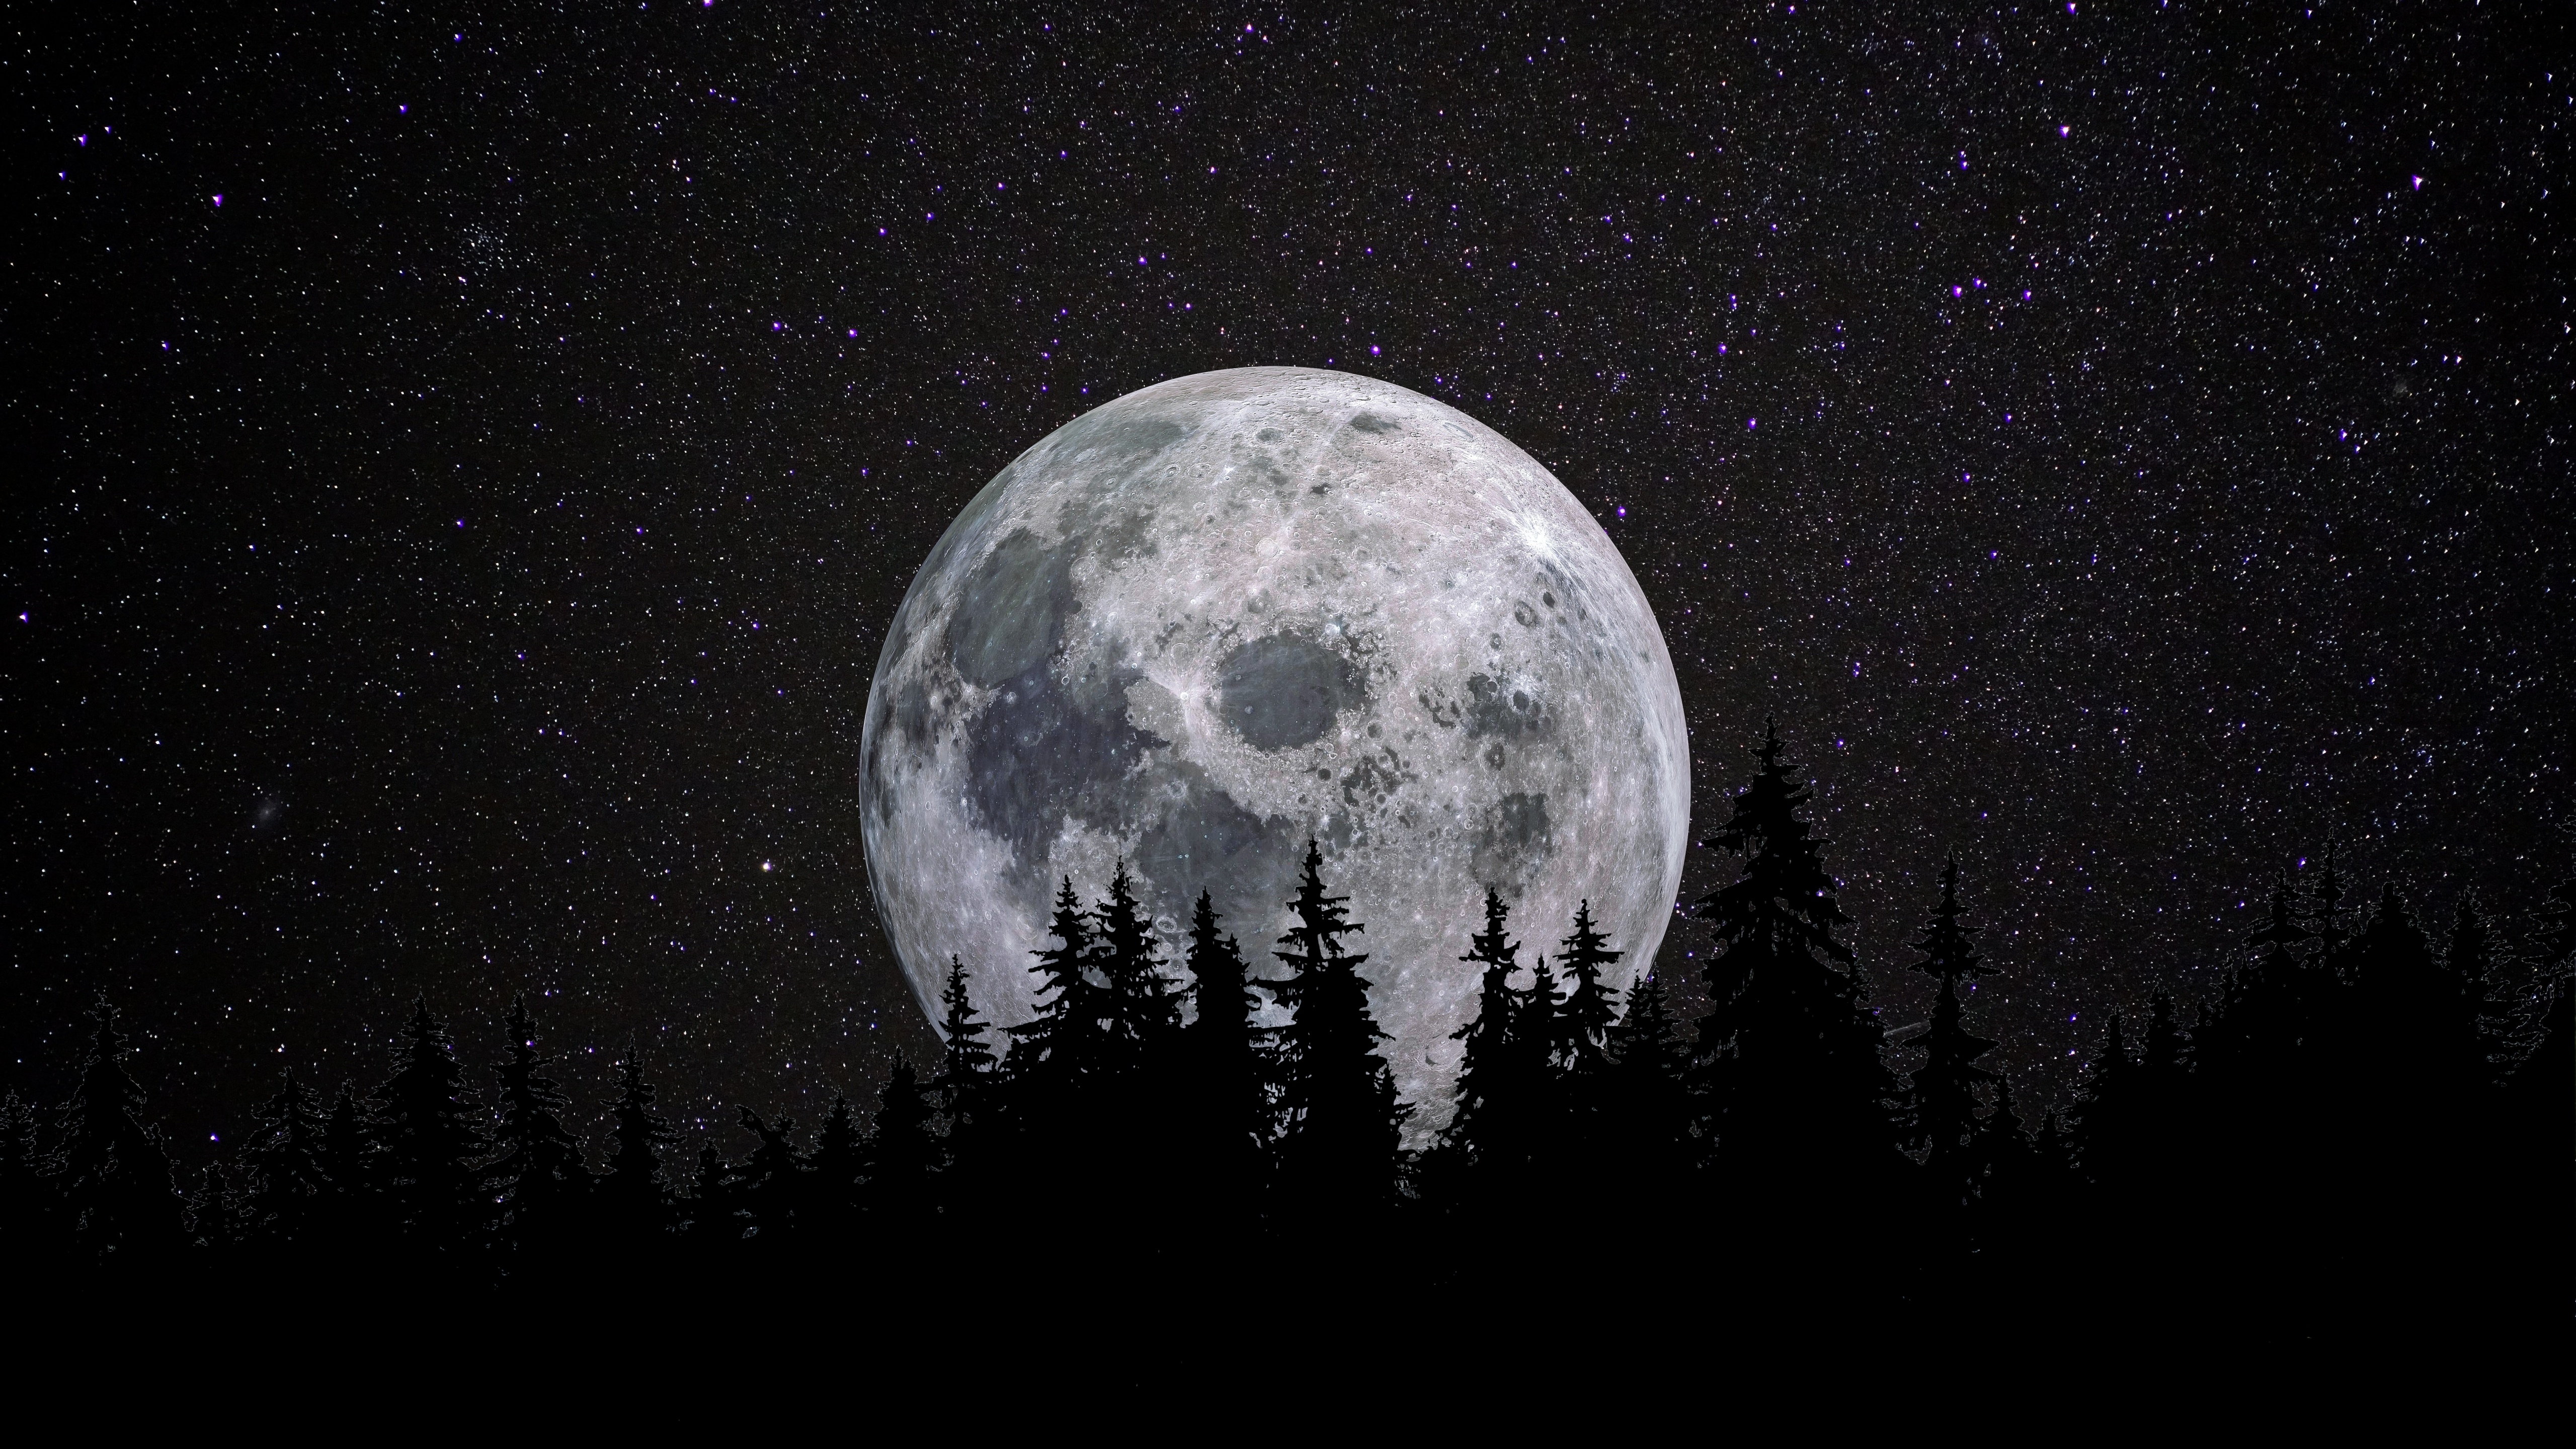 Thưởng thức vẻ đẹp tràn đầy cảm hứng và sự quyến rũ của ánh trăng tròn qua hình nền Full Moon Wallpaper tuyệt đẹp. Cảm giác thanh tịnh và sự yên bình sẽ tràn đầy trong lòng bạn khi ngắm nhìn hình ảnh này.